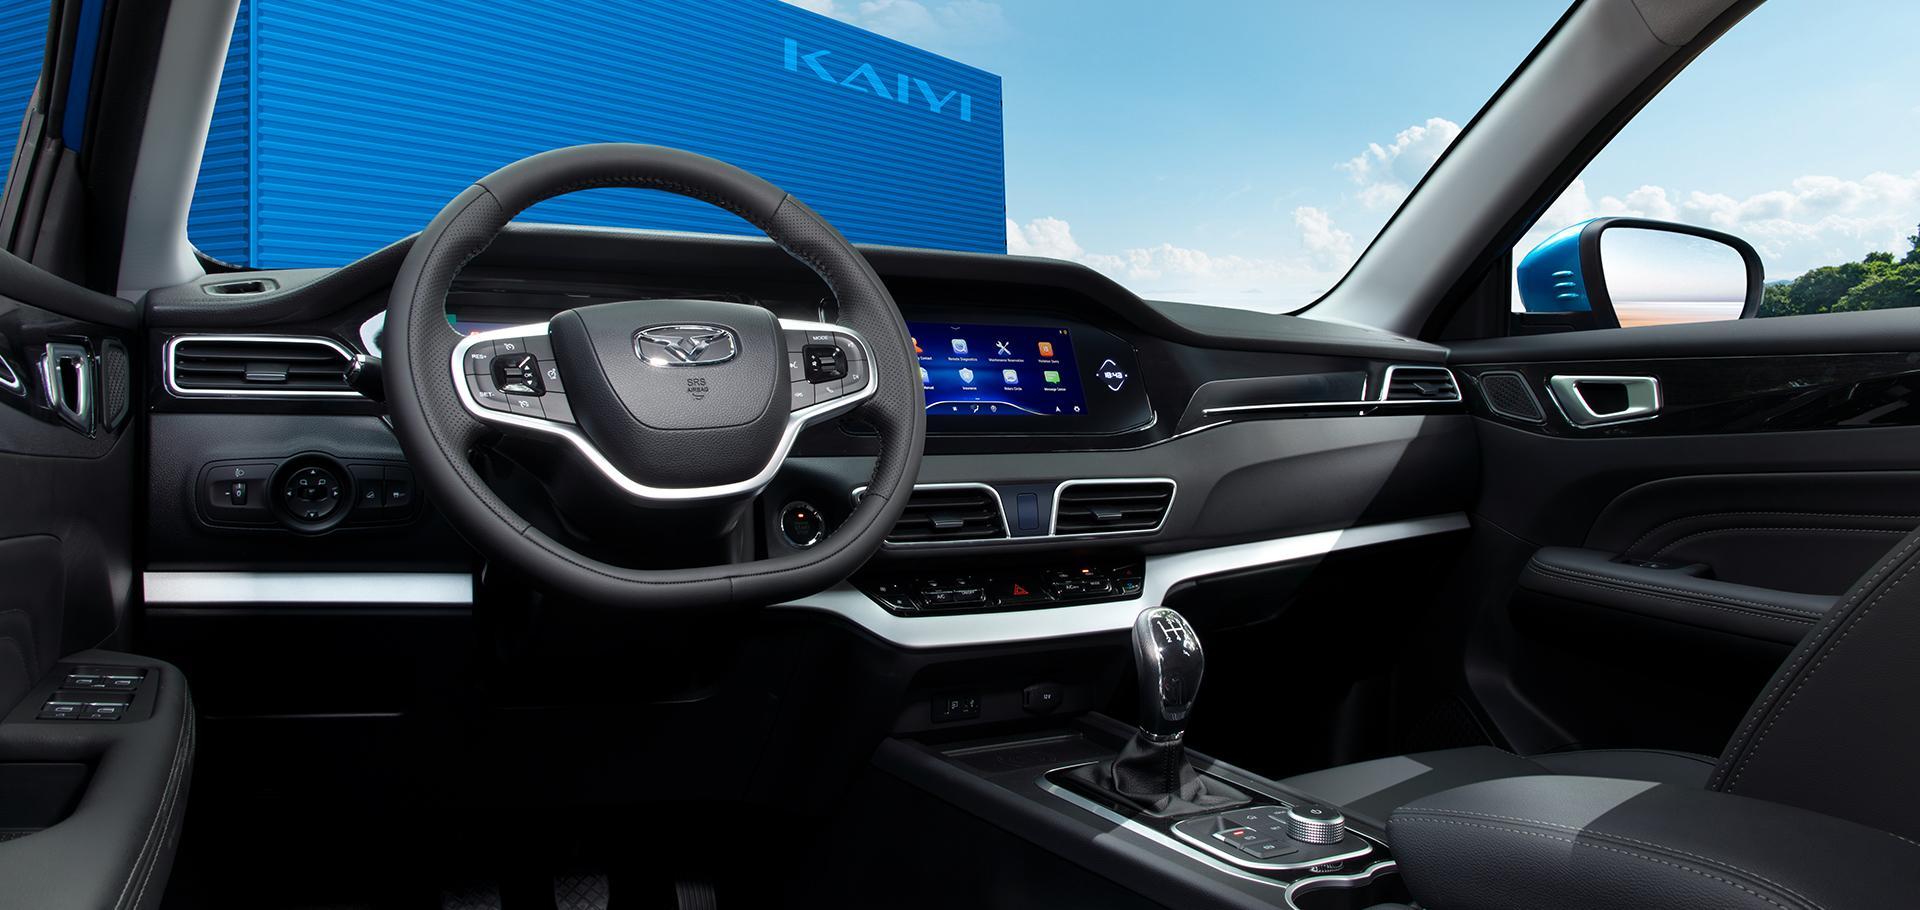 Оснащение и характеристики, как у Kia Cerato, а стоимость на уровне Lada Granta. Утекли российские цены на Kaiyi E5 2023